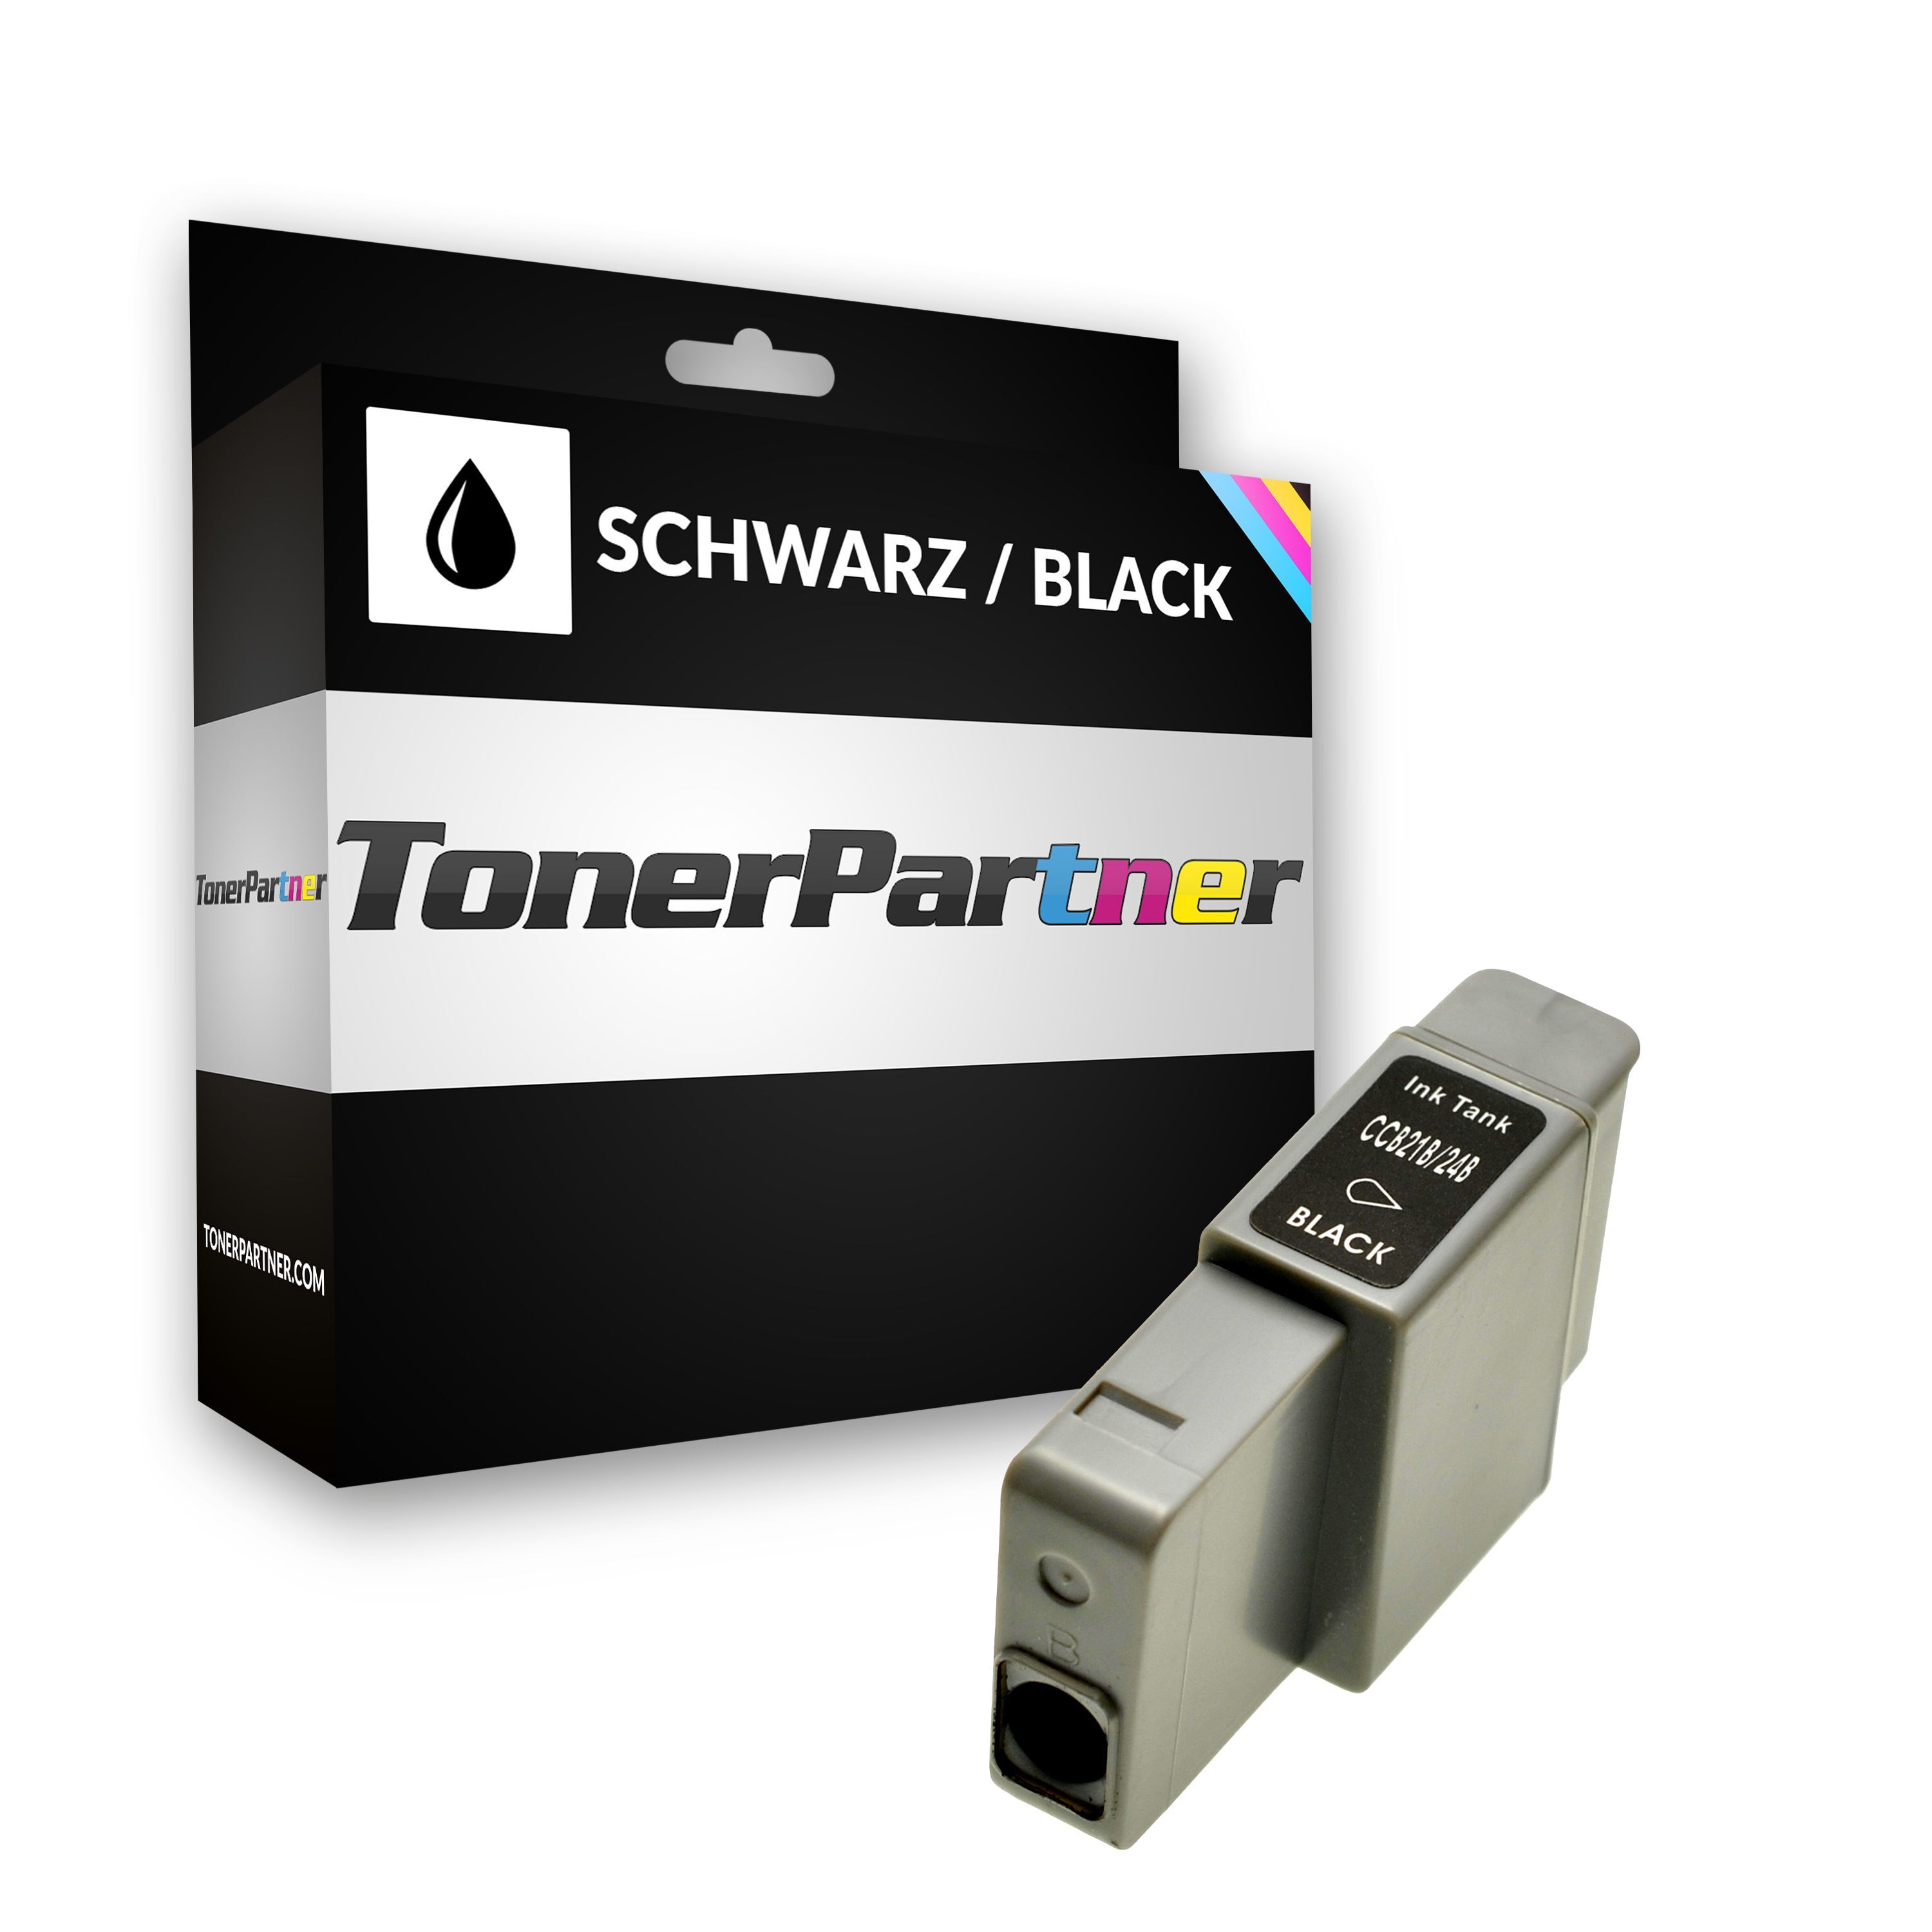 TonerPartner Kompatibel zu Canon I 450 Tintenpatrone (BCI-24 BK / 6881 A 002) schwarz, 240 Seiten, 1,44 Rp pro Seite, Inhalt: 9 ml von TonerPartner